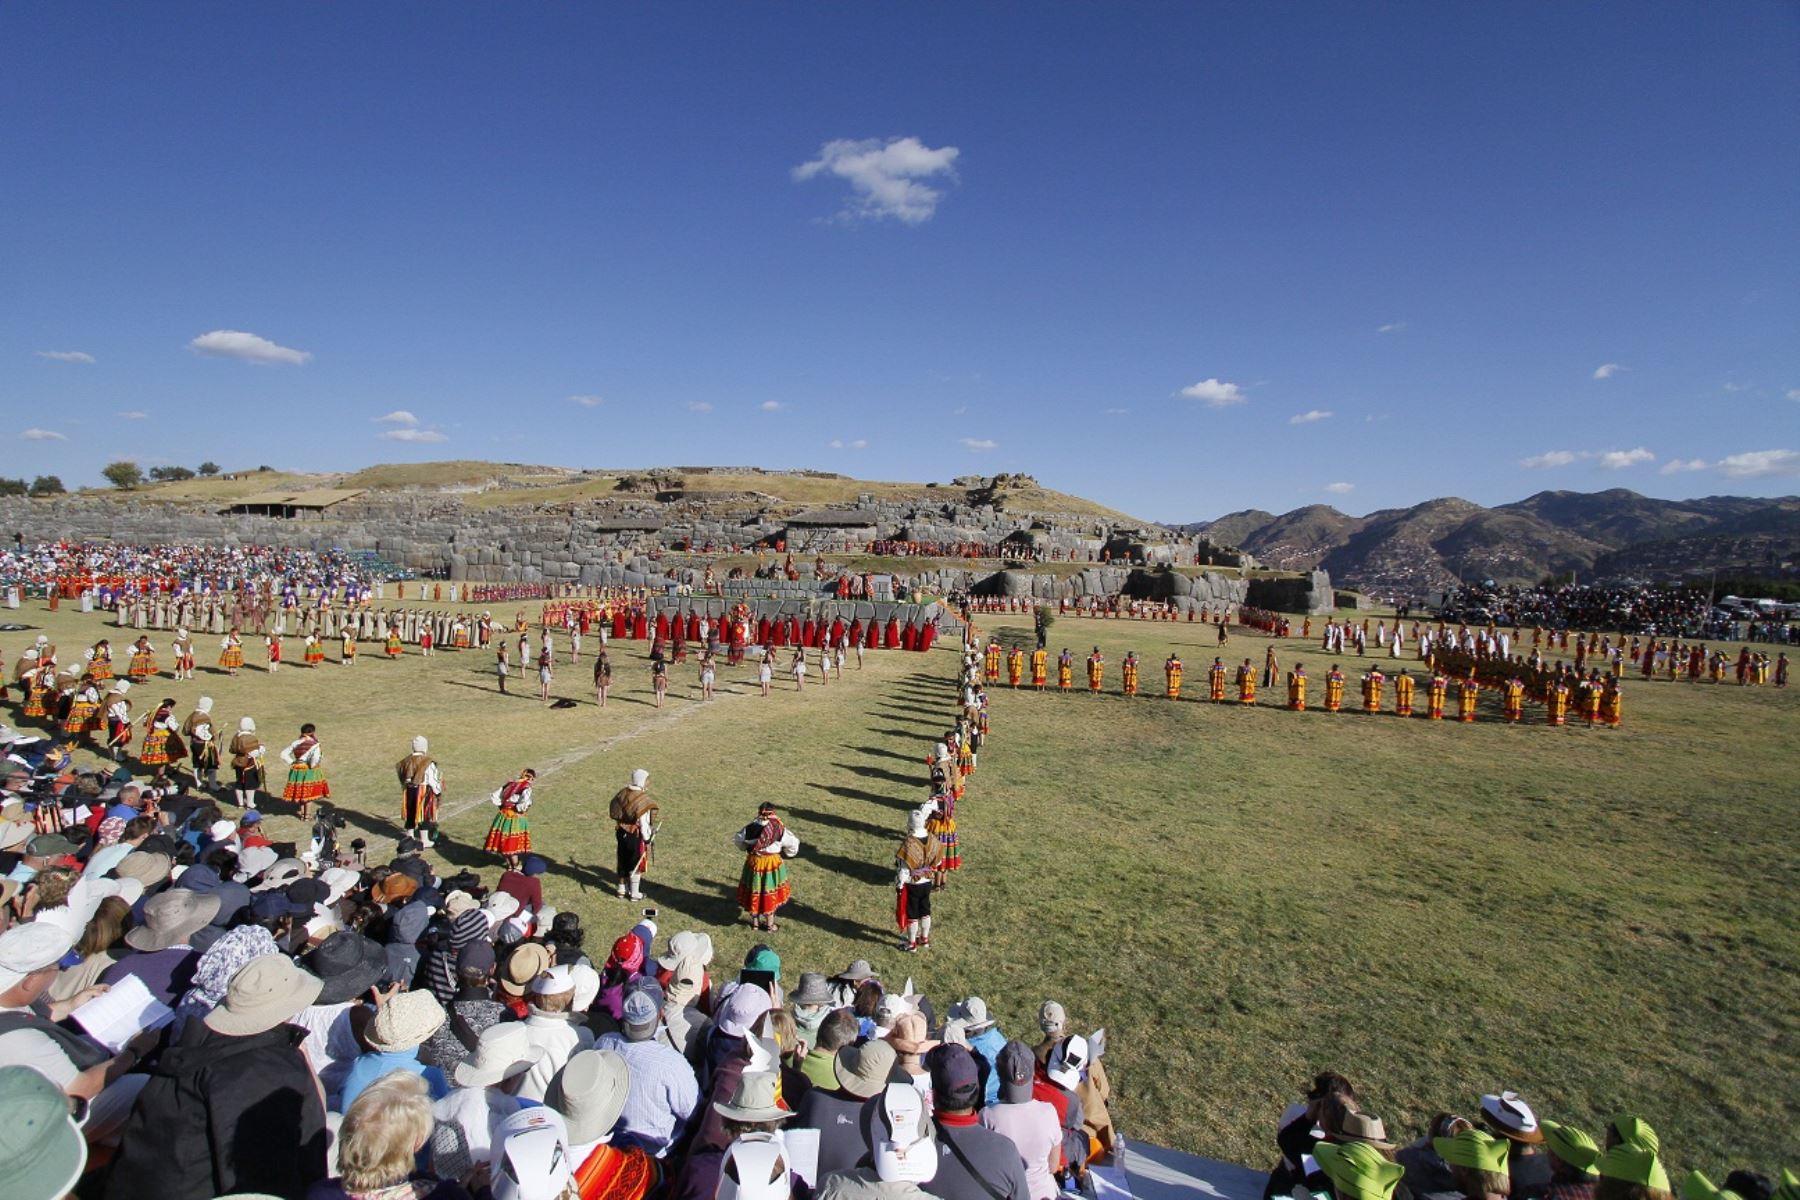 Agilizarán escenificación del Inti Raymi en Sacsayhuamán que se realiza el 24 de junio. ANDINA/Percy Hurtado.